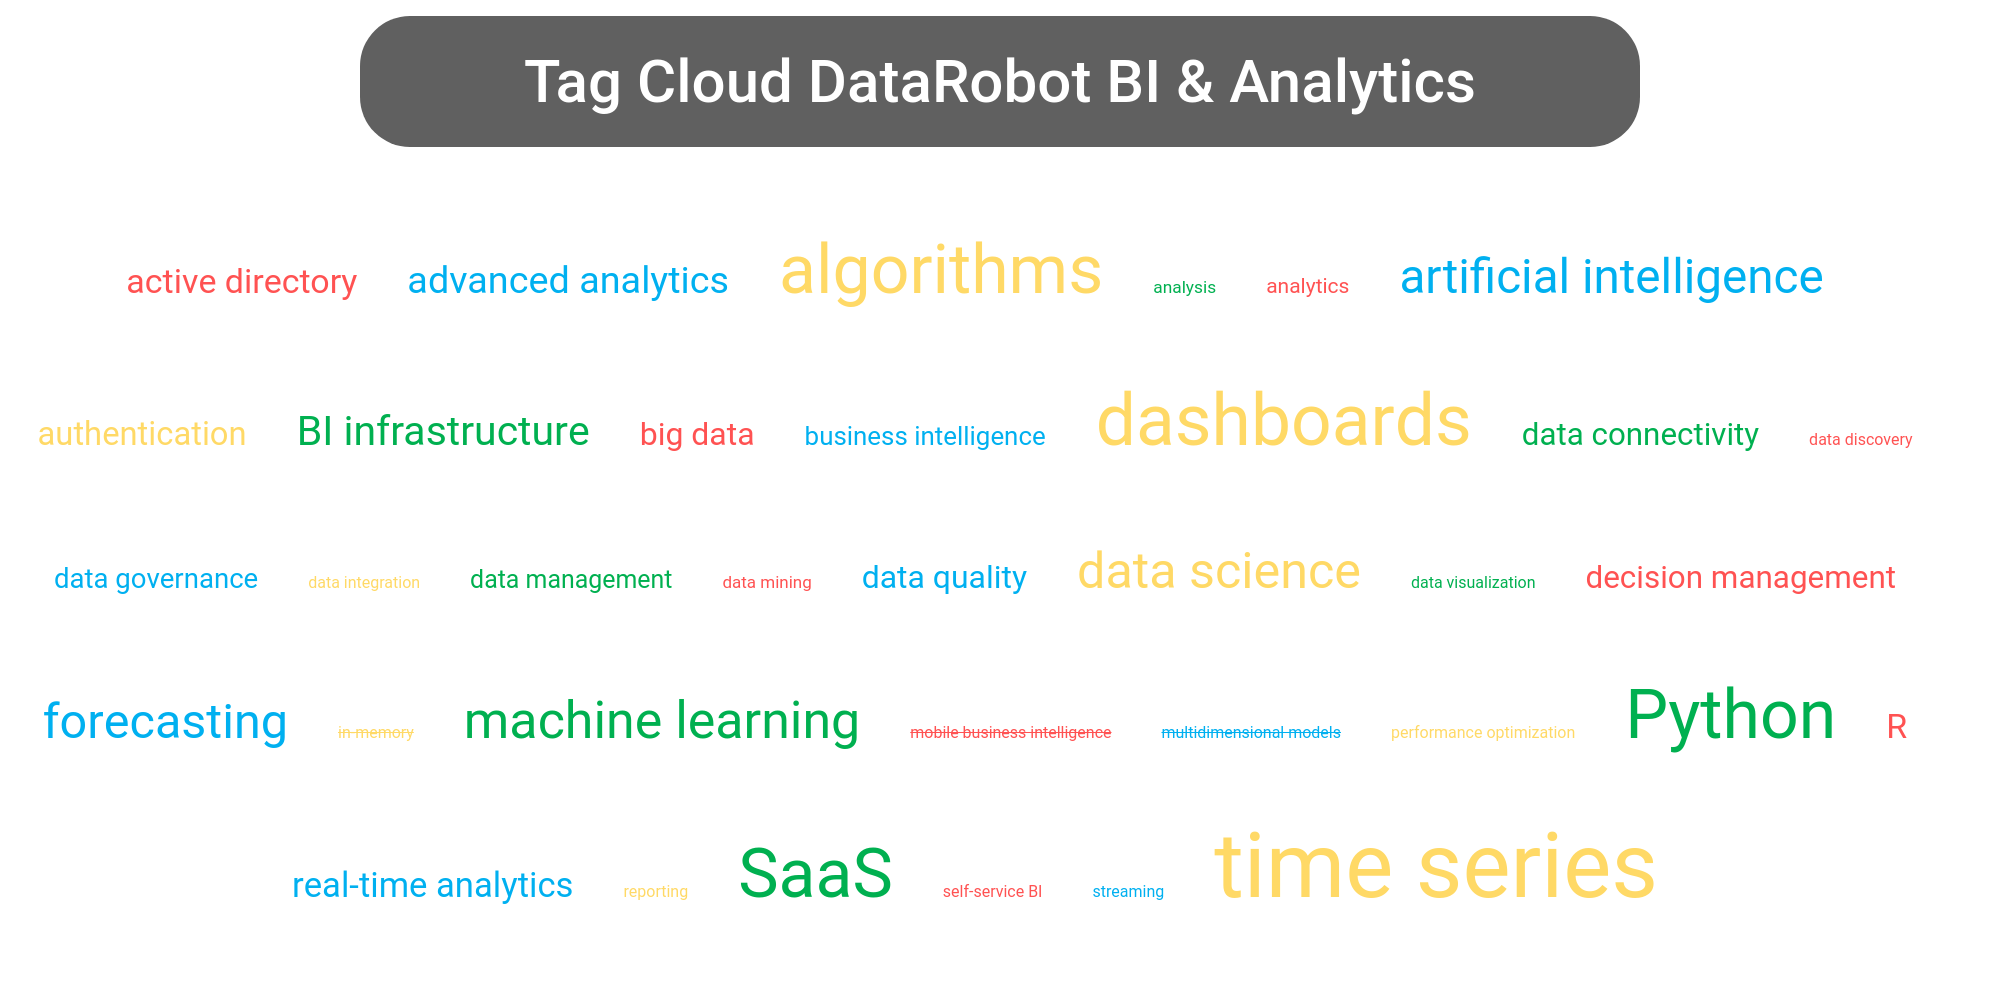 Tag cloud of the DataRobot platform tools.